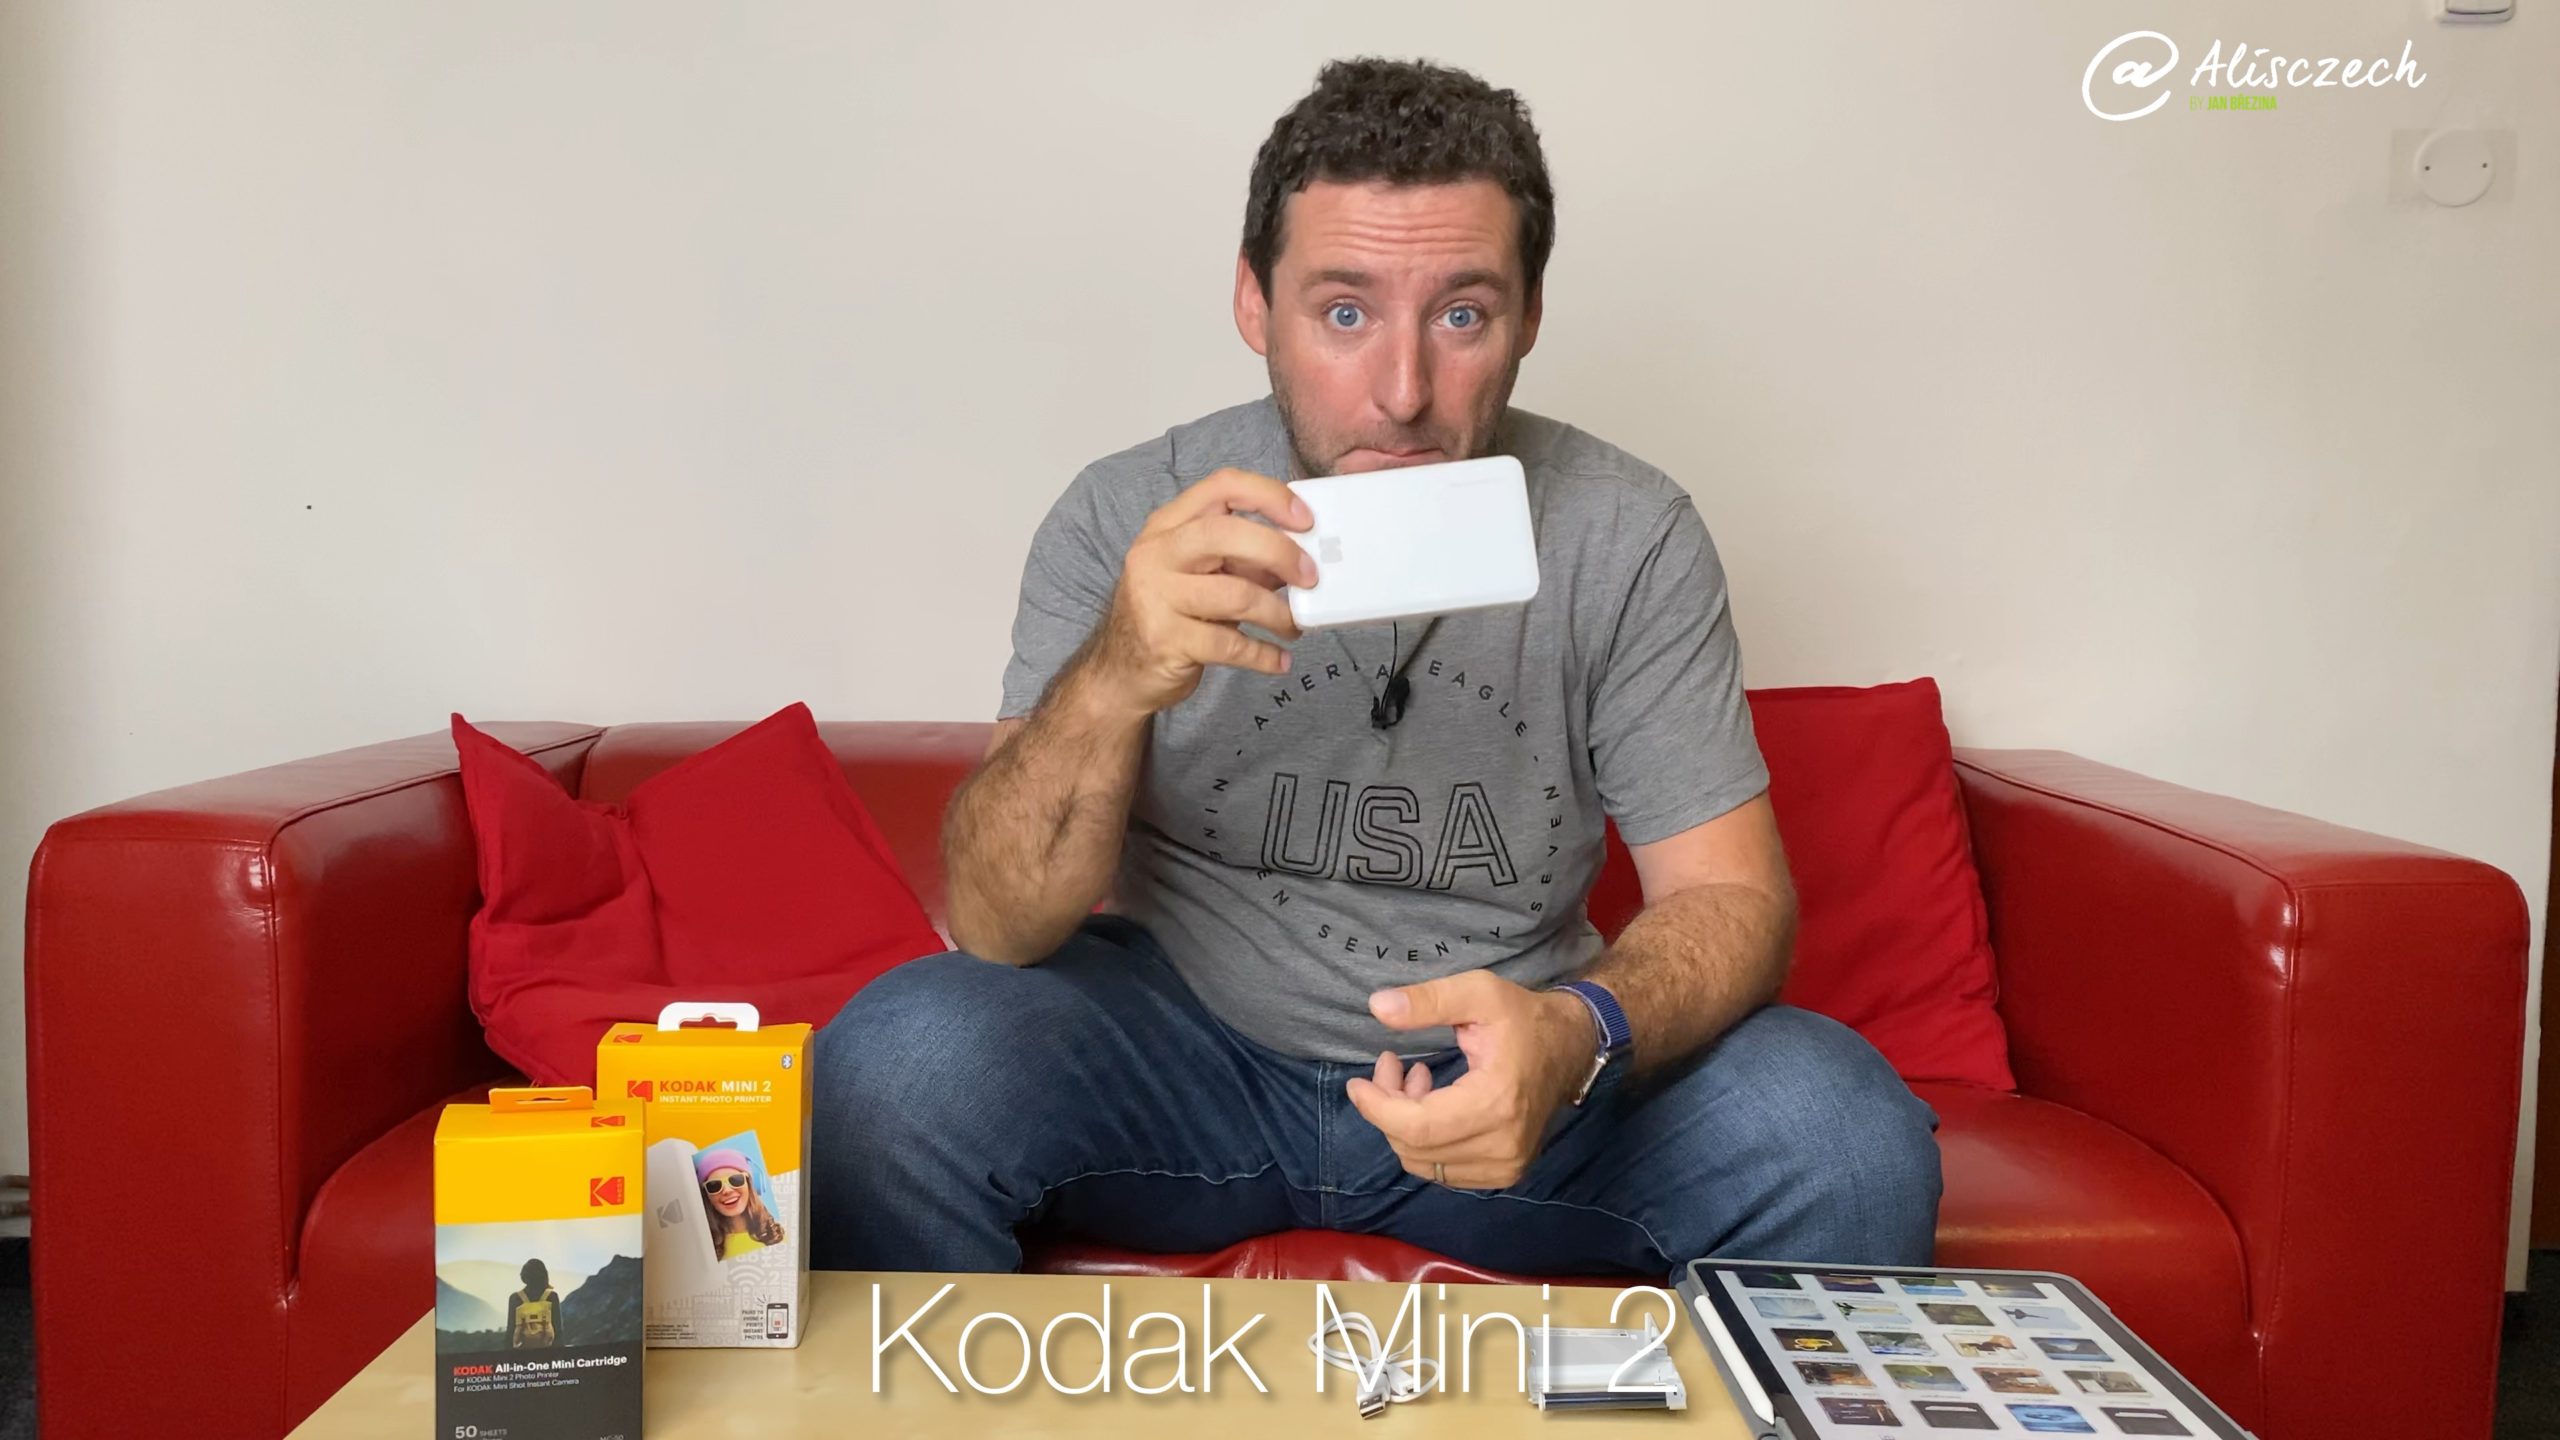 Kodak Mini 2